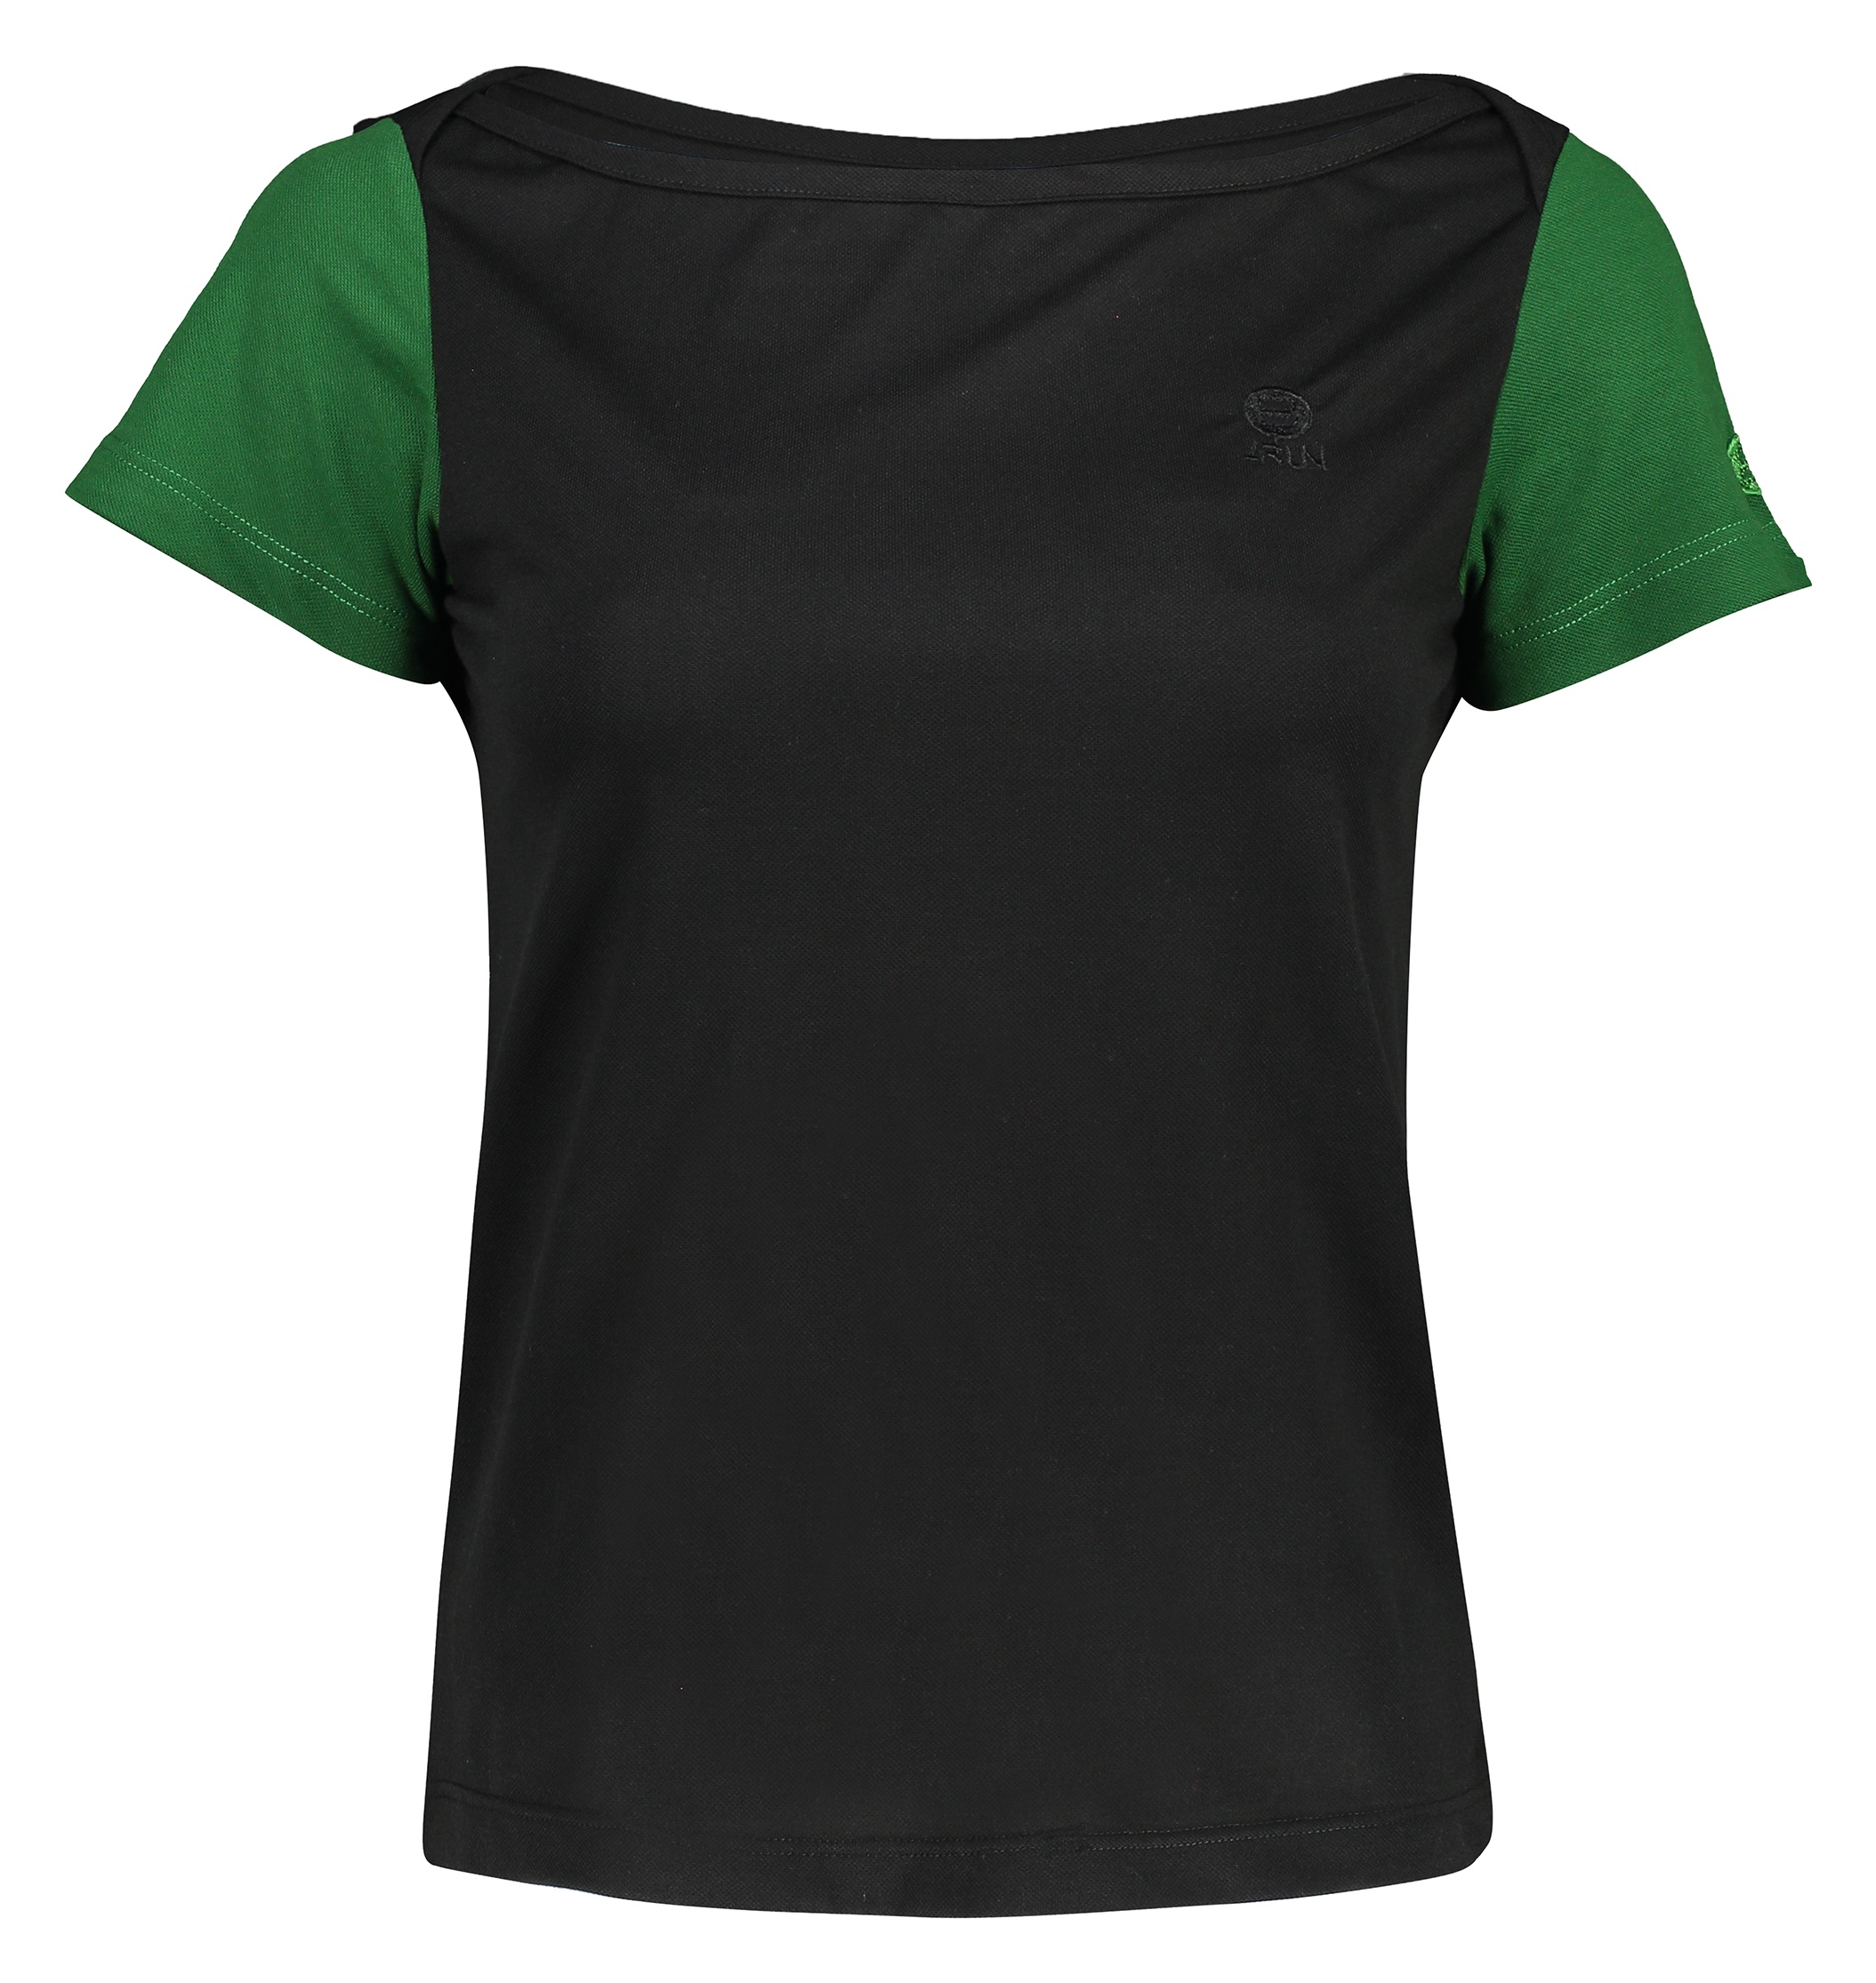 تی شرت ورزشی زنانه بی فور ران مدل 970324-9943 - مشکی سبز - 2